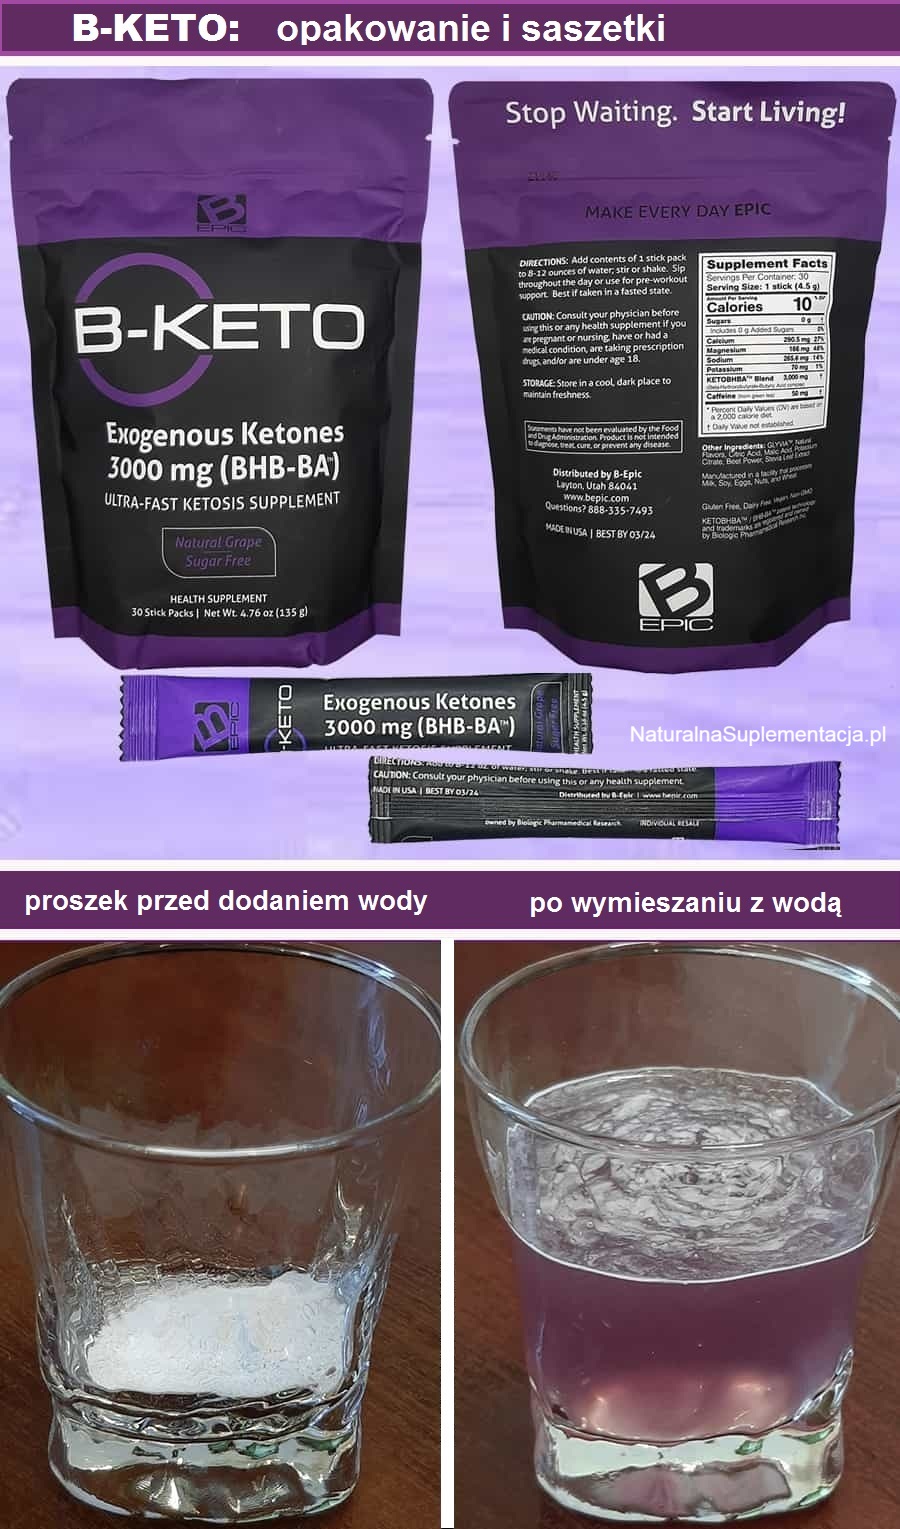 Zawartość saszetki produktu B-keto umieszczona w szklankach, przed wymieszaniem i po wymieszaniu produktu